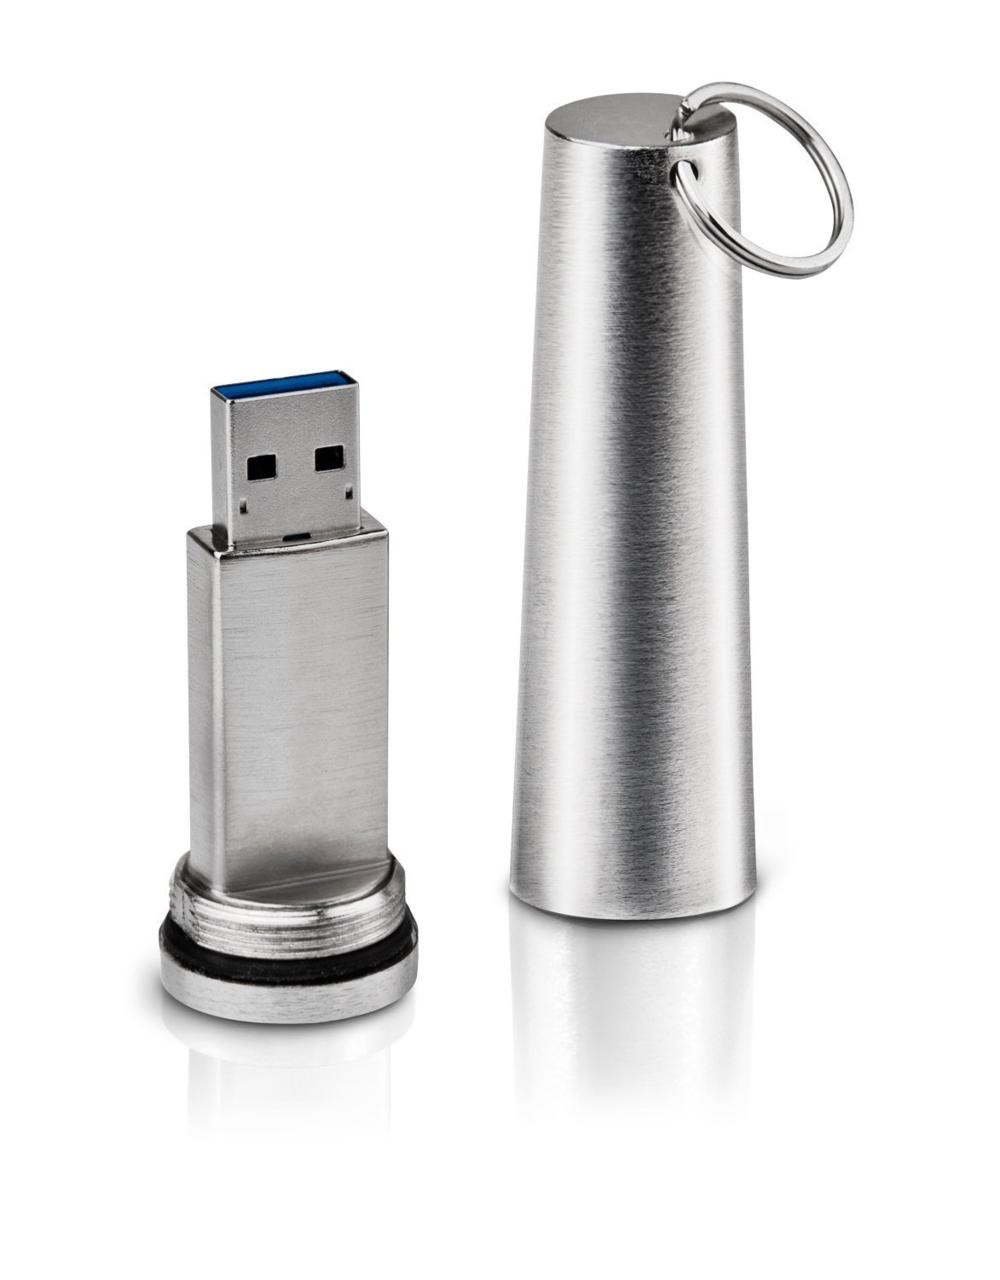 USB drive: LaCie XtremKey USB 3.0 (32GB)